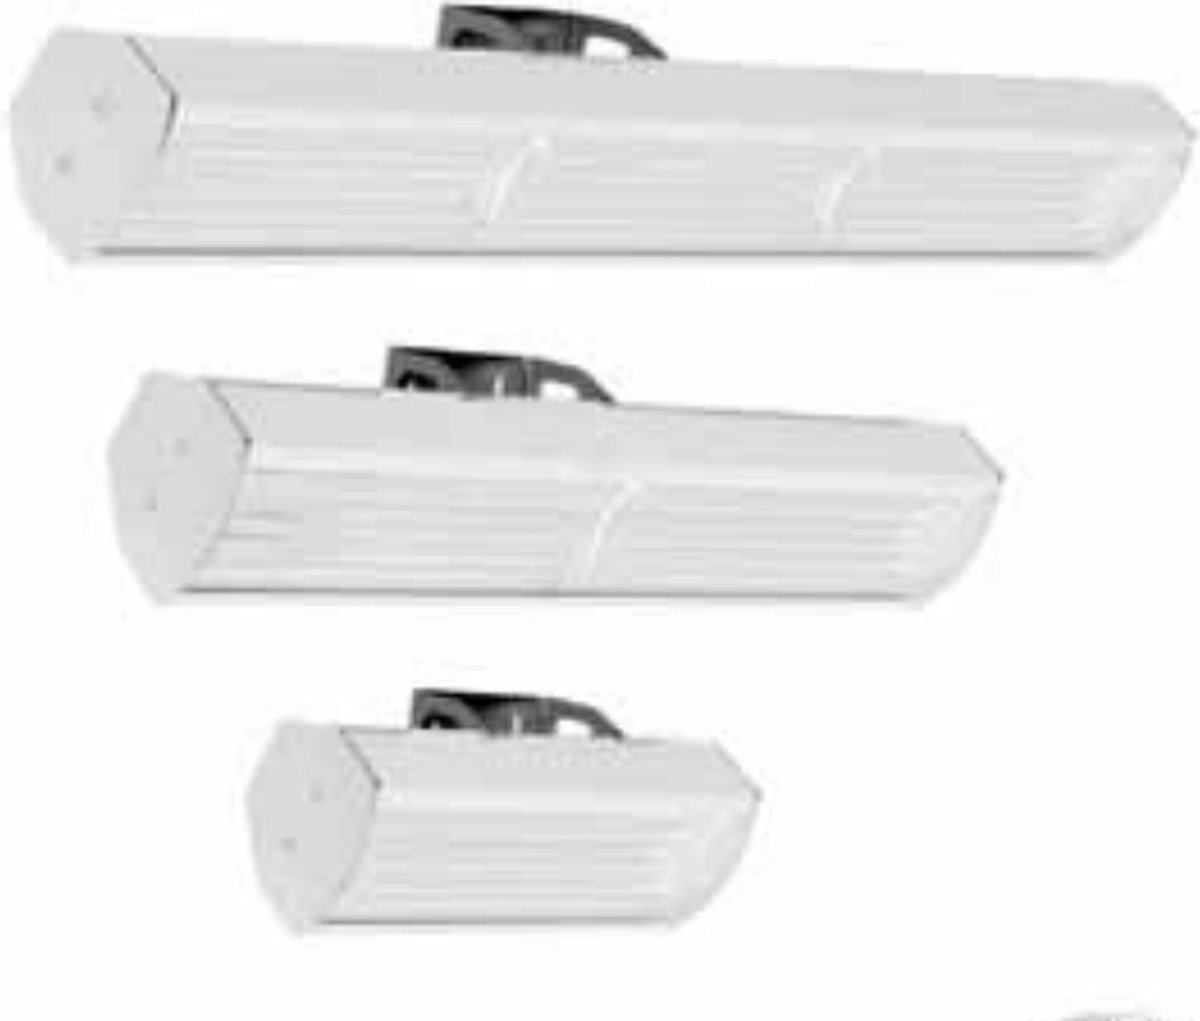 Classic wit straler 650 watt met infraroodstraling met beugel voor plafondmontage, Welltherm HP classic wit